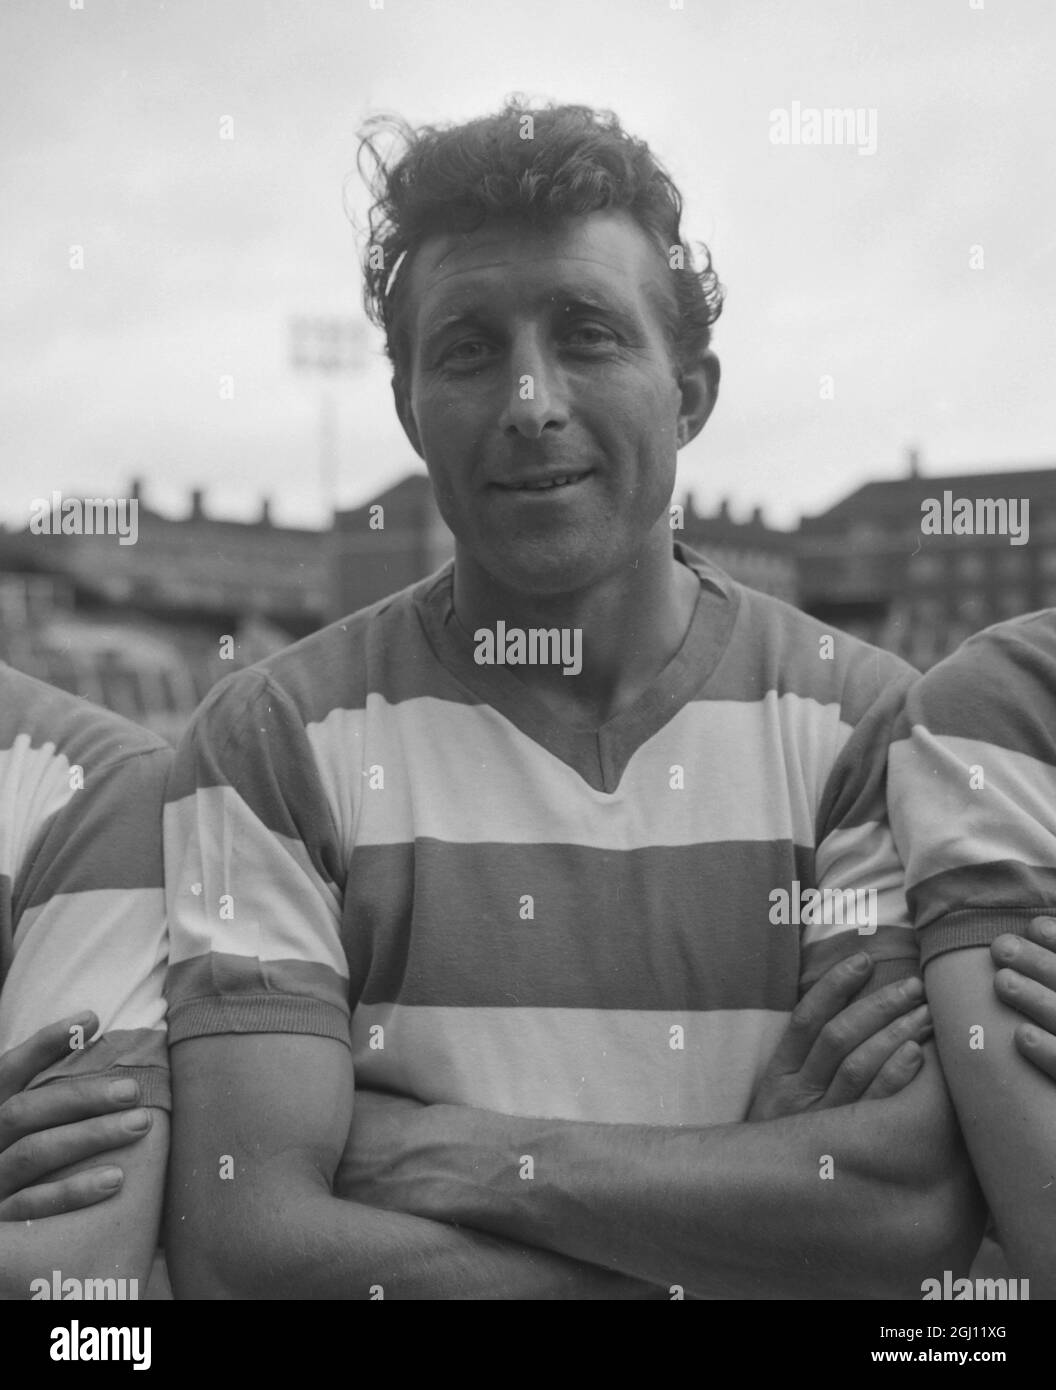 PETER ANGELL - QPR FC FOOTBALLER, QUEEN'S PARK RANGERS FOOTBALL CLUB 10 AUGUST 1961 Stock Photo